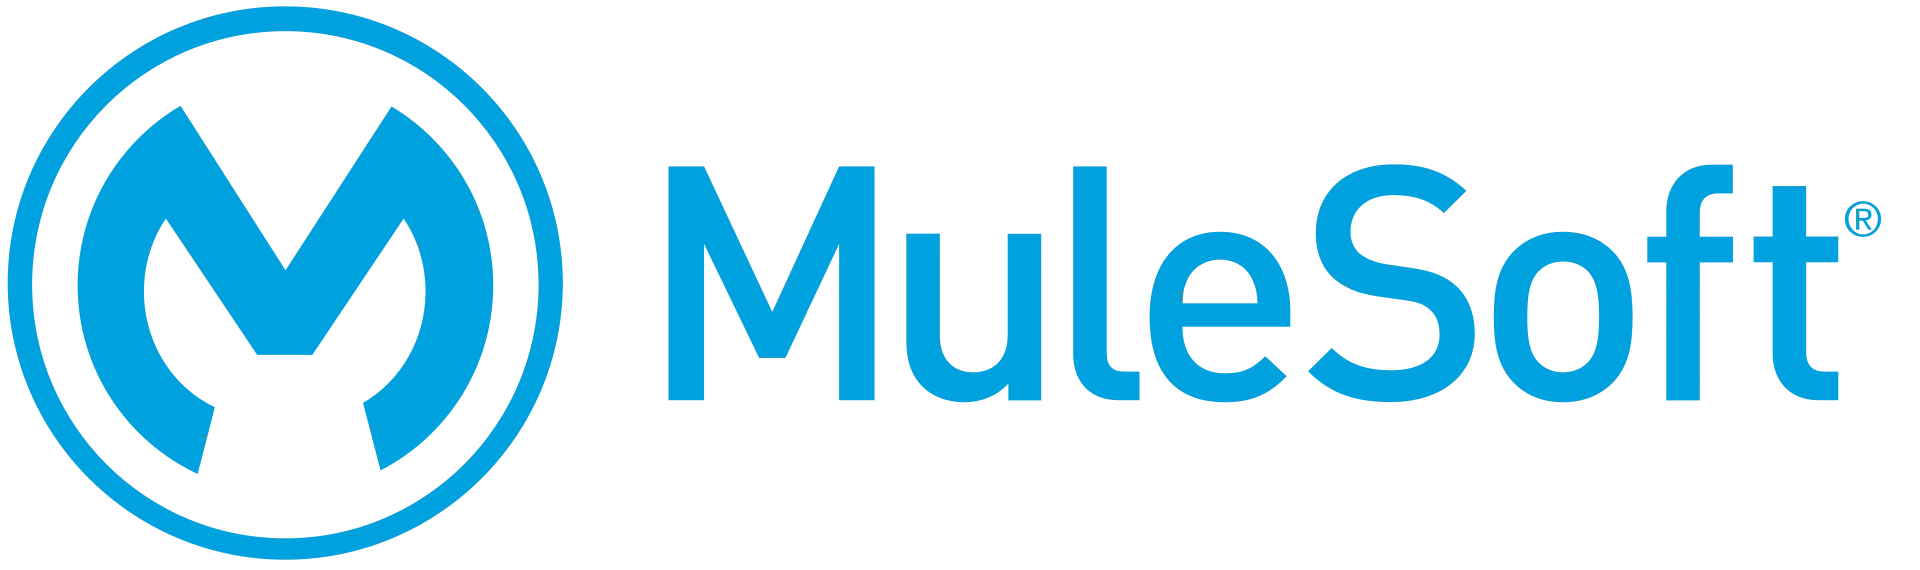 MuleSoft_logo